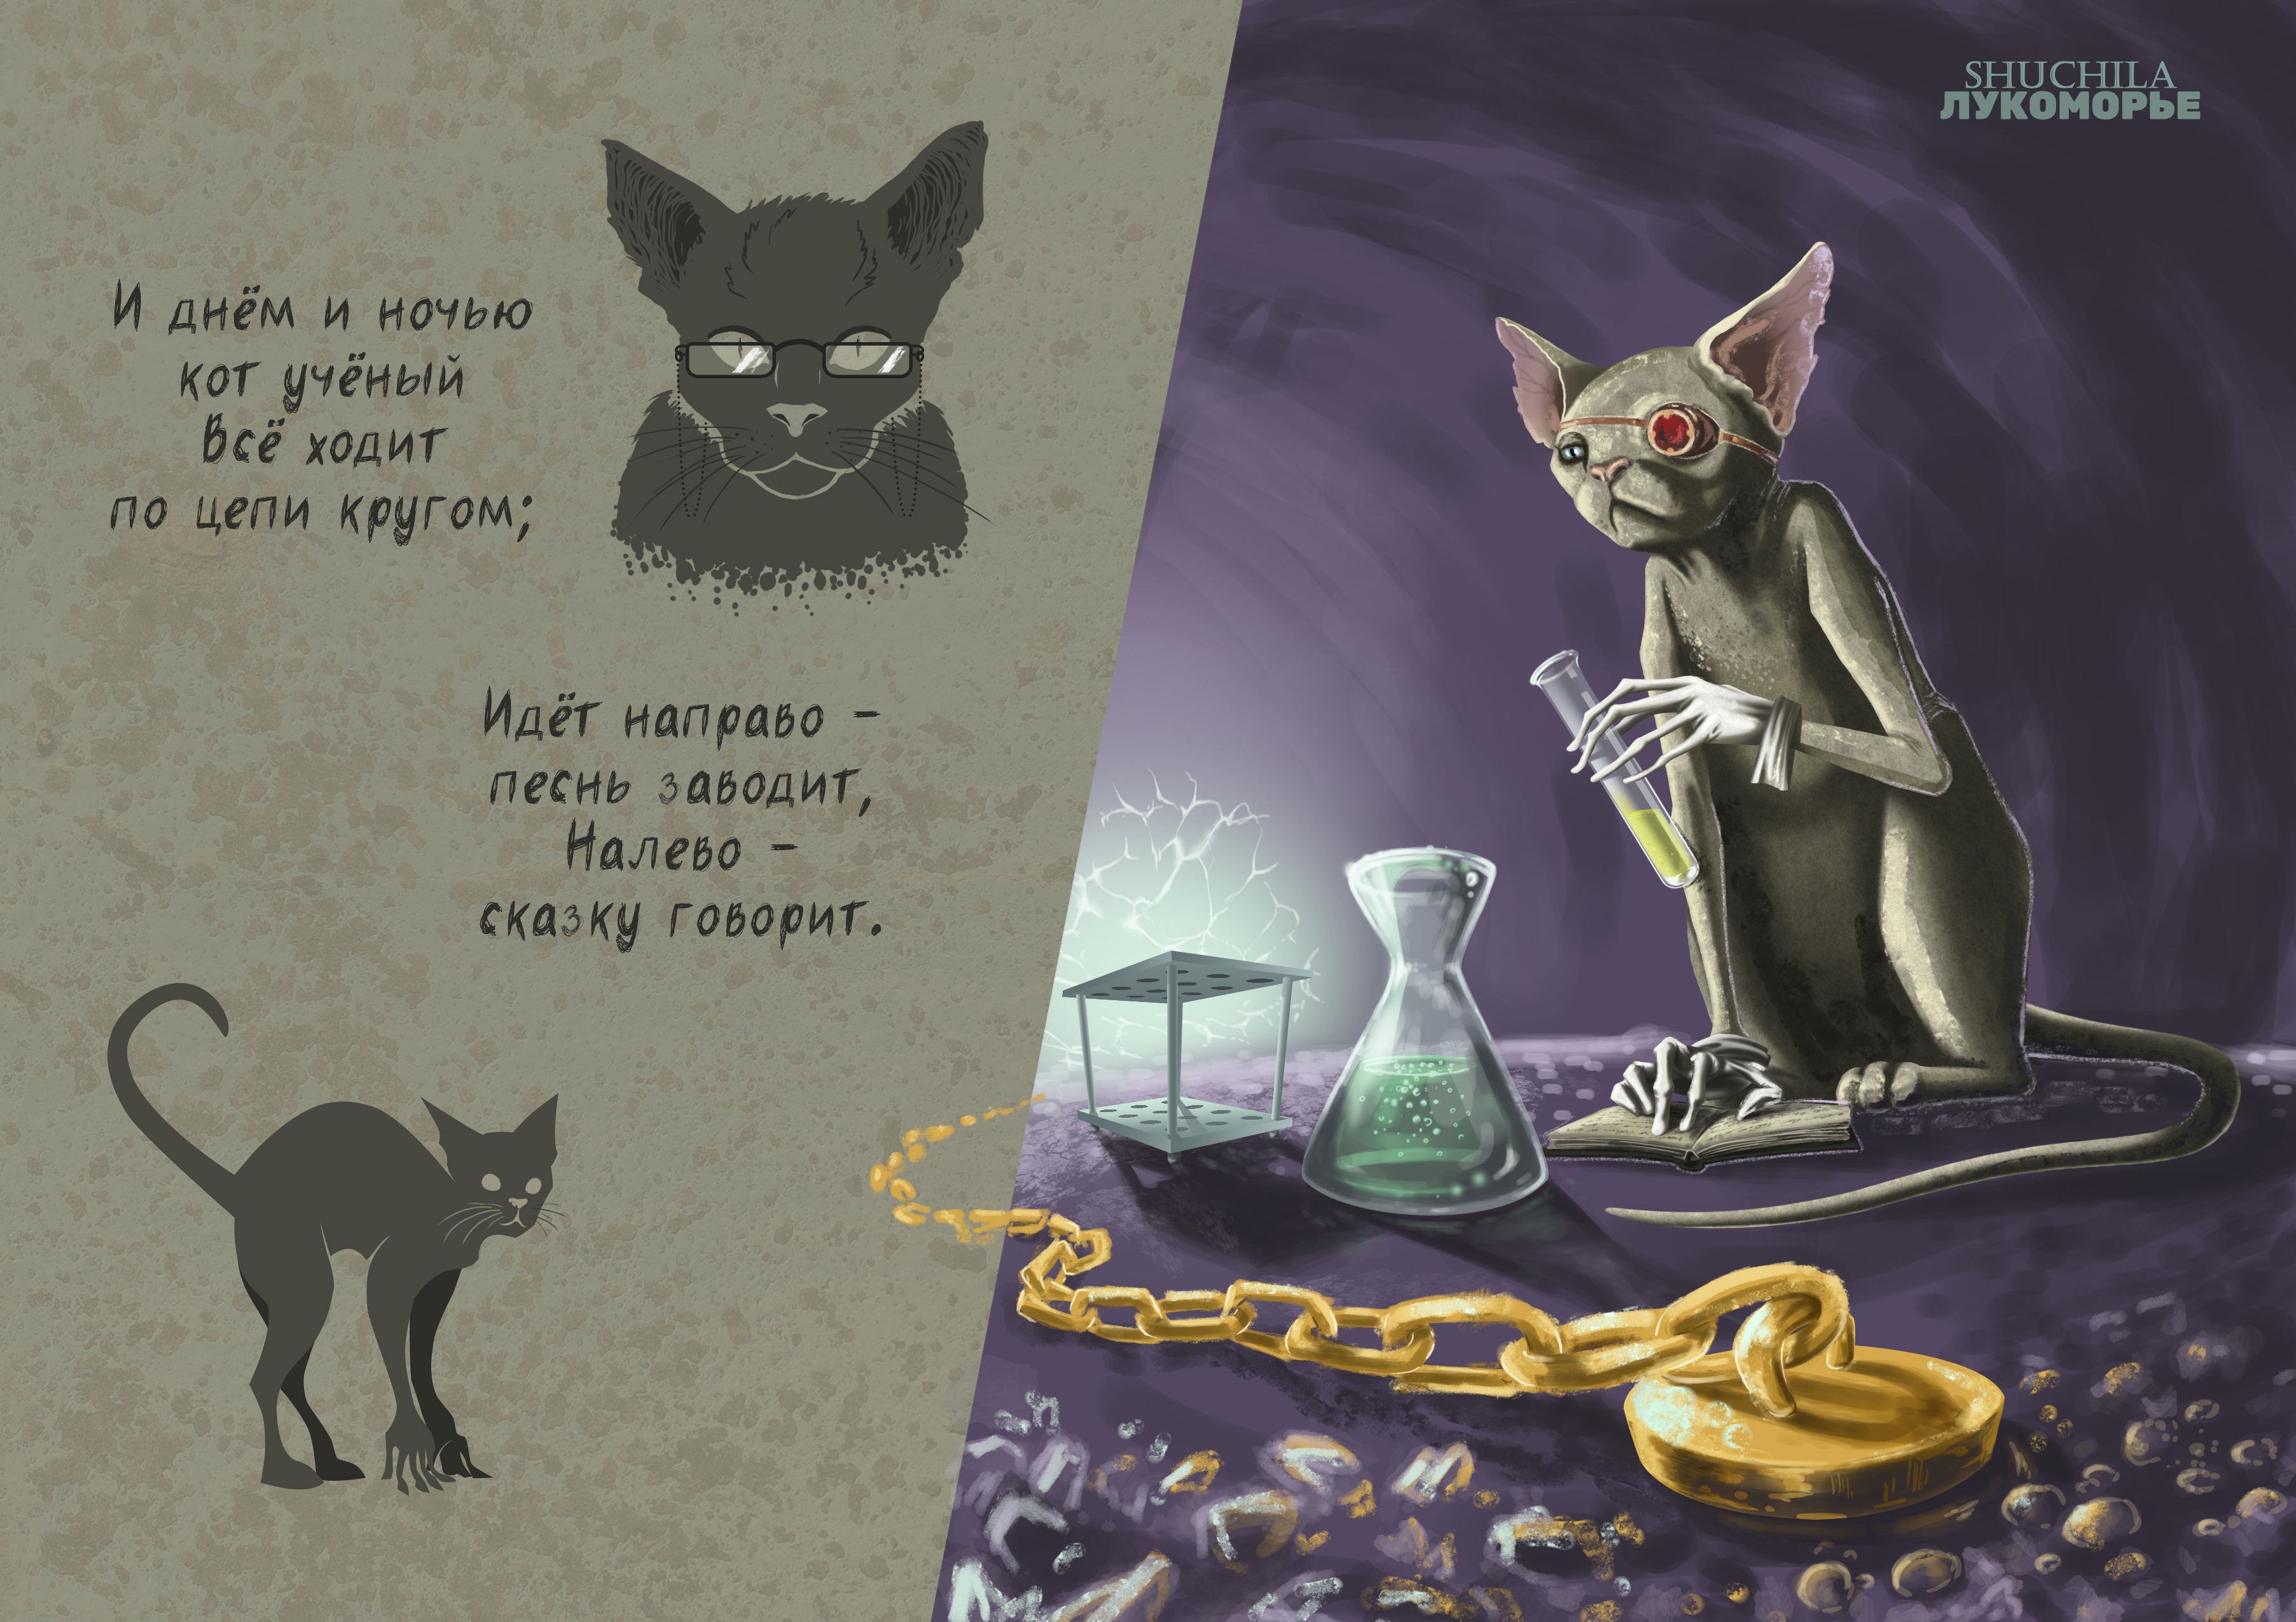 Рисунок и днем и ночью кот ученый